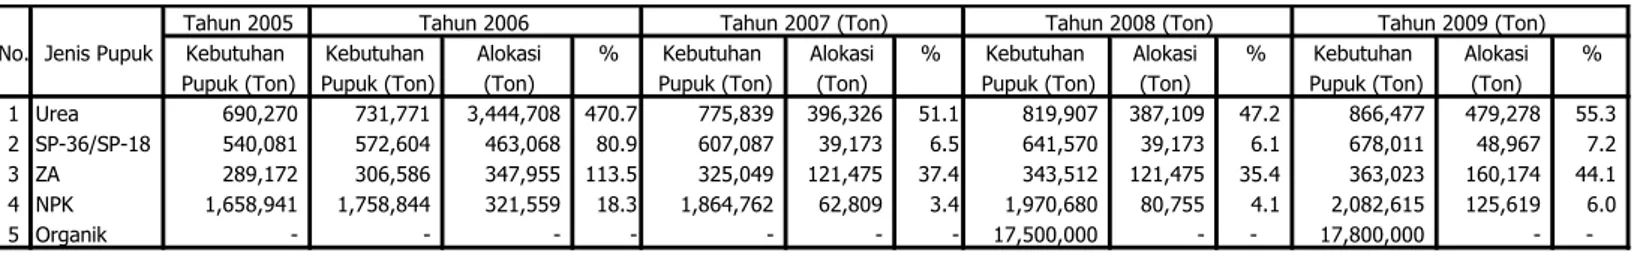 Tabel 7 .Kebutuhan dan Alokasi Pupuk Bersubsidi Sektor Hortikultura Tahun 2005 - 2009 